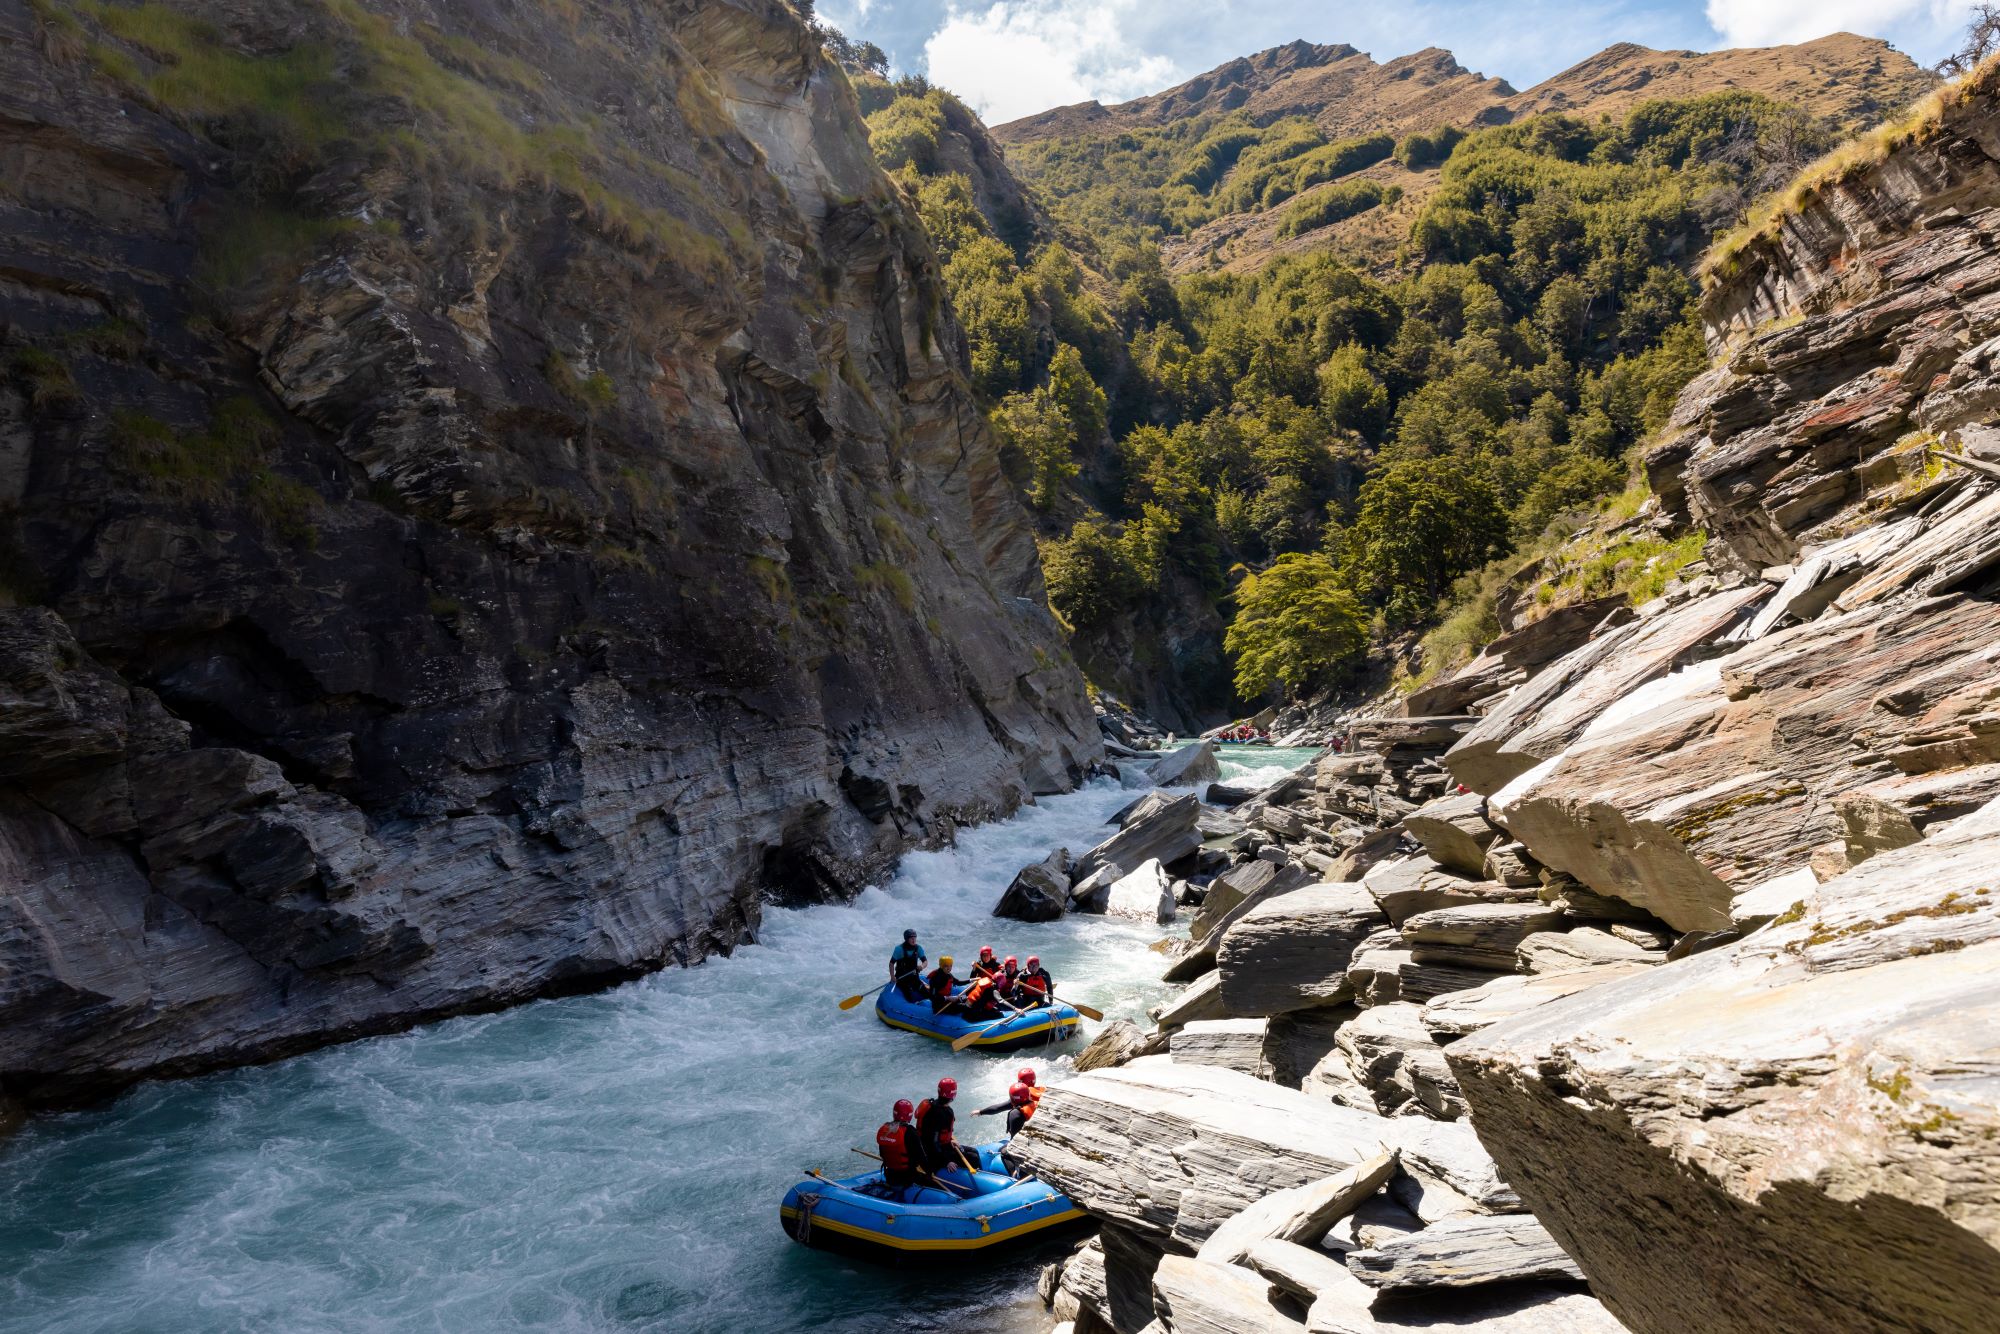 Two rafts on the Kawarau River